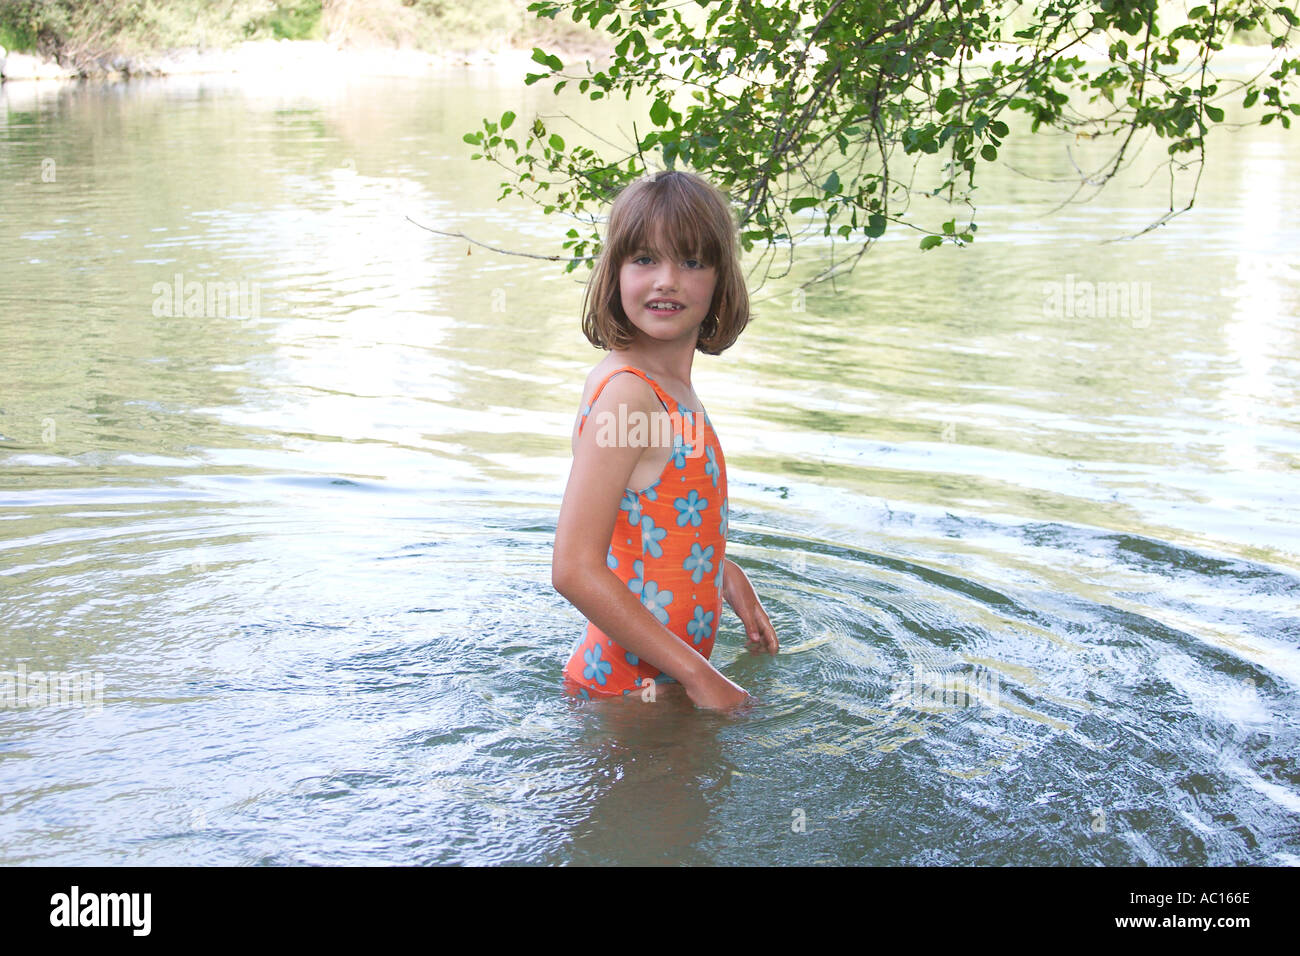 Mädchen Badet In Fluss Fotos Und Bildmaterial In Hoher Auflösung Alamy 